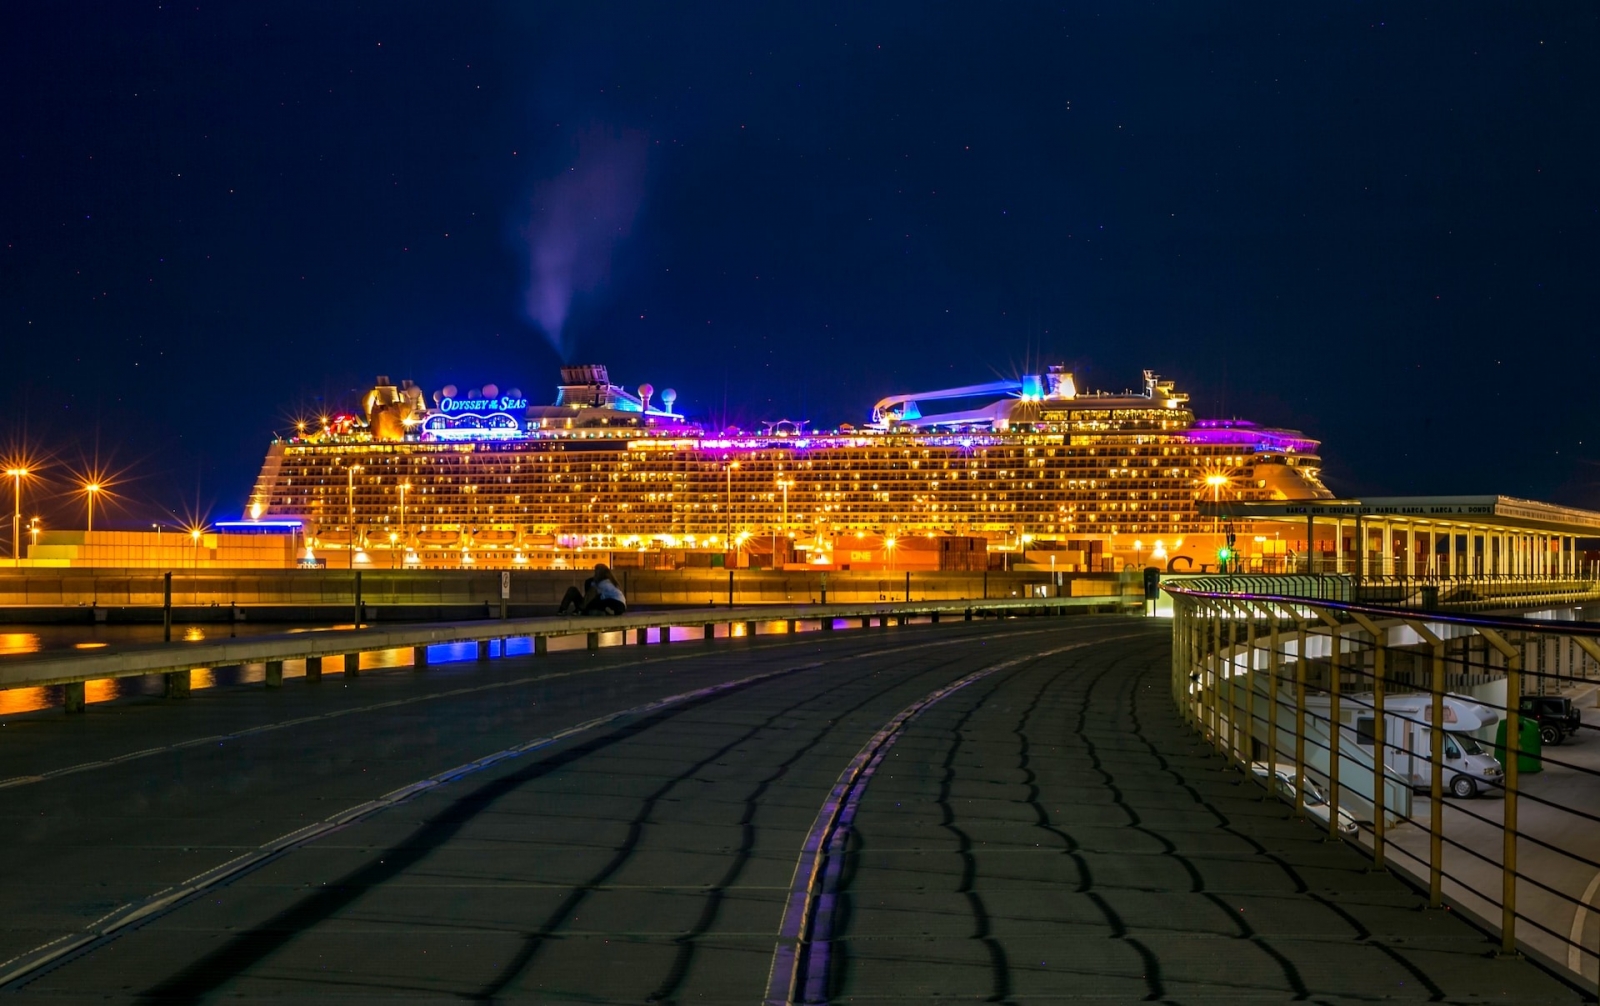 Nella vivace città portuale di Valencia, una colossale nave da crociera domina lo skyline notturno, con la sua facciata illuminata che si riflette sulle acque scintillanti.